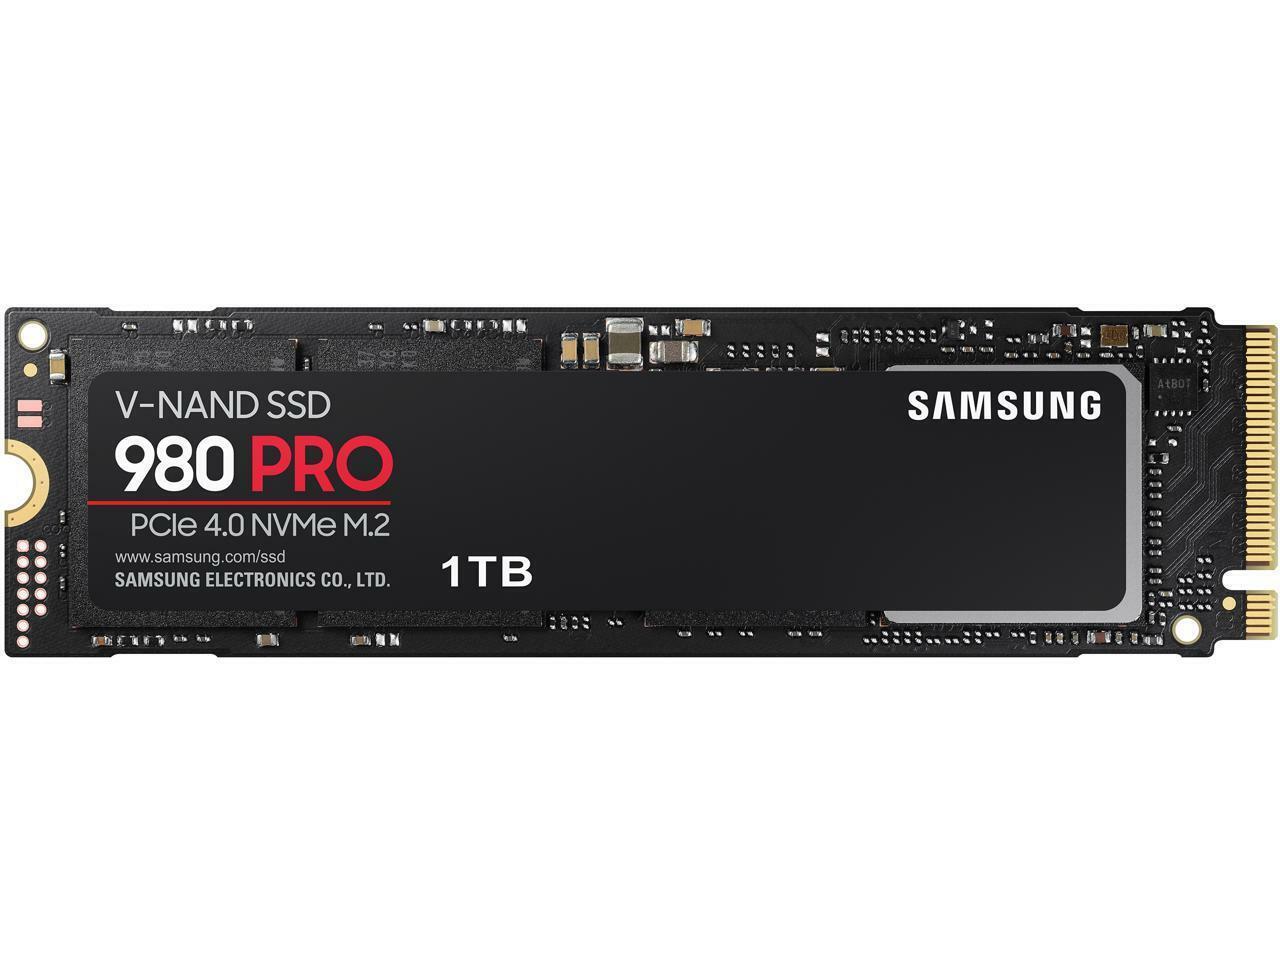 SAMSUNG 980 PRO 1TB M.2 2280 PCI-Express Gen 4.0 x4, NVMe 1.3c 5000 Mb/s SSD Dri